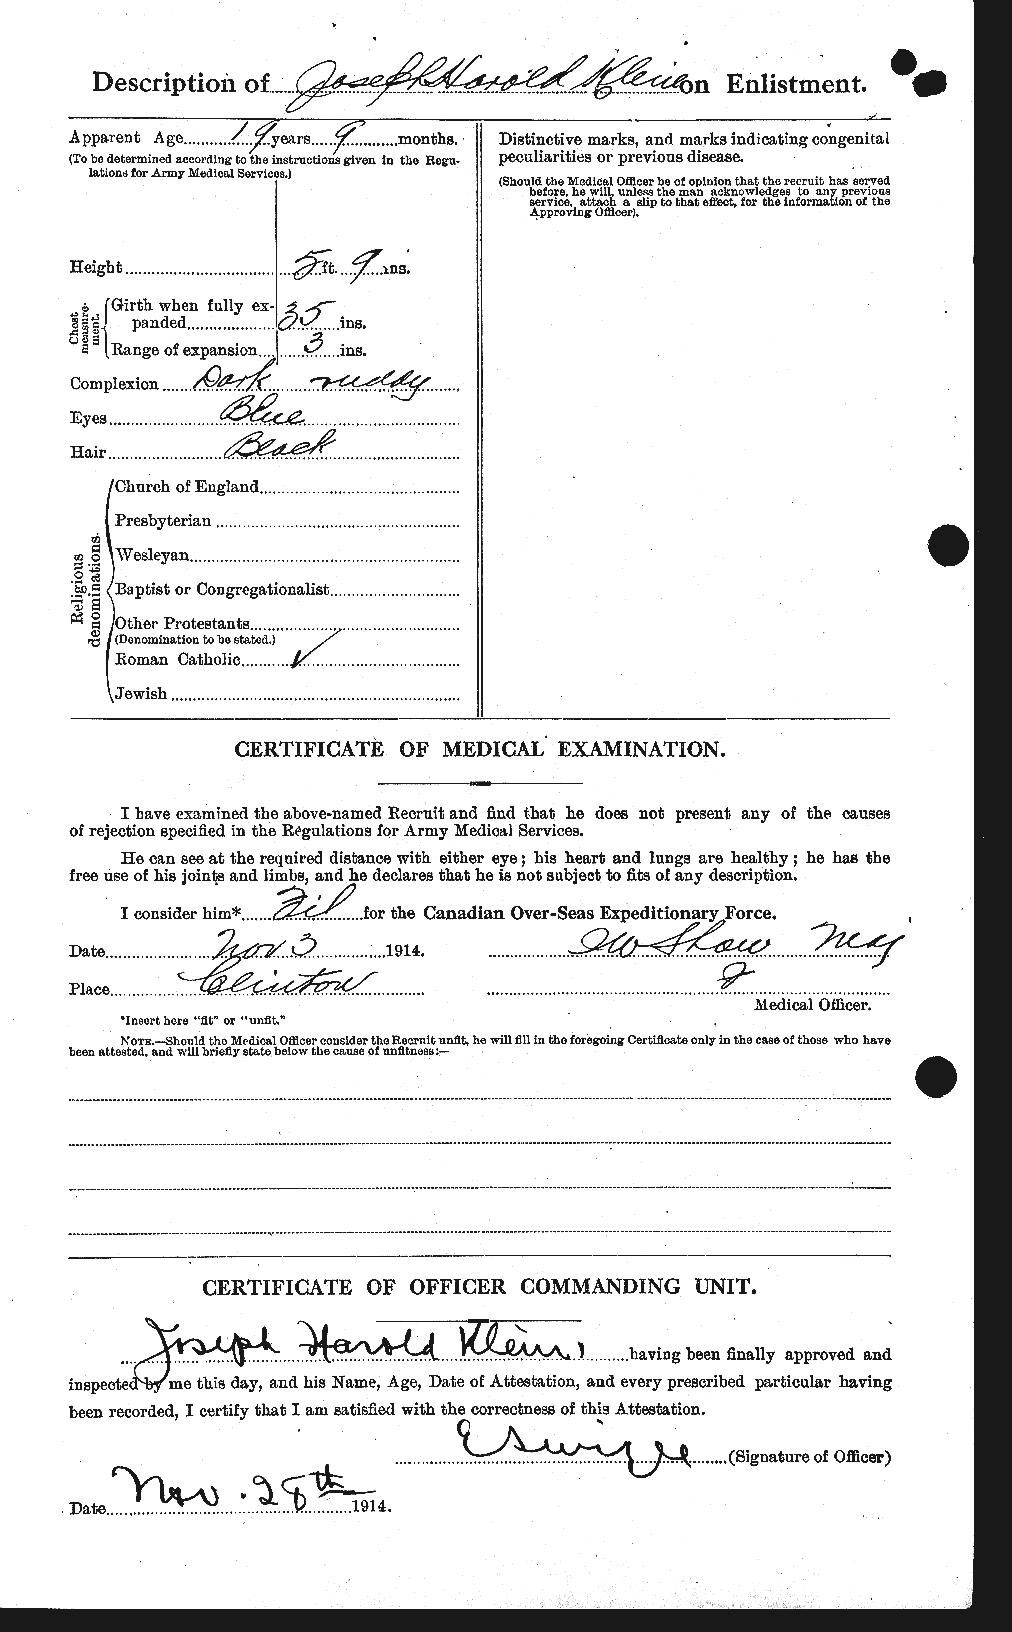 Dossiers du Personnel de la Première Guerre mondiale - CEC 438767b